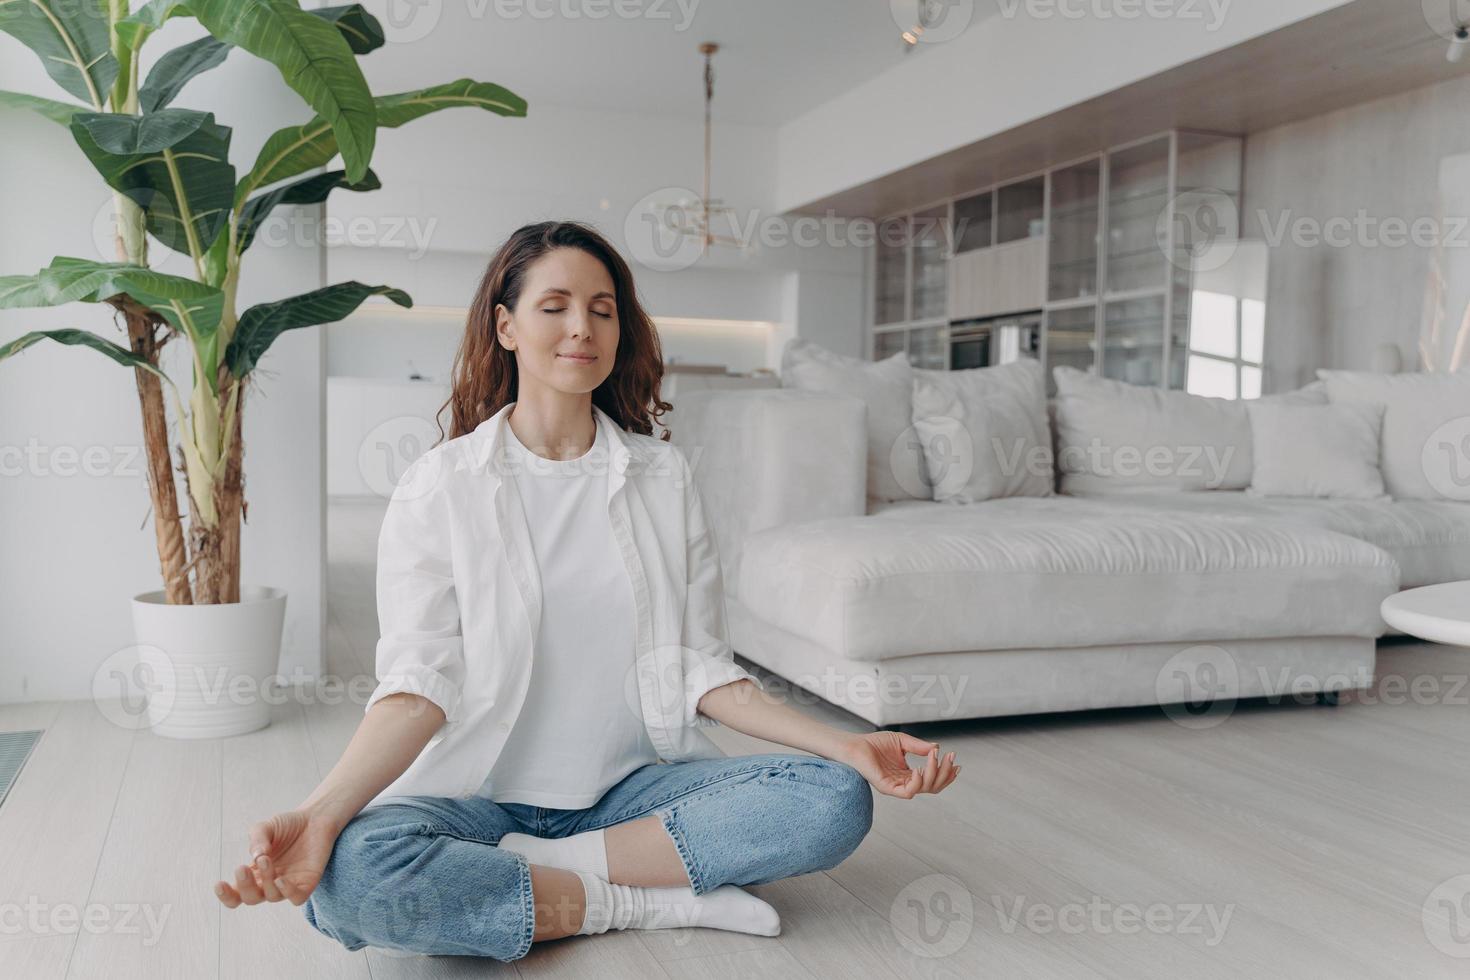 serena mulher praticando ioga sentada em postura de lótus no chão em casa. bem-estar, estilo de vida saudável foto